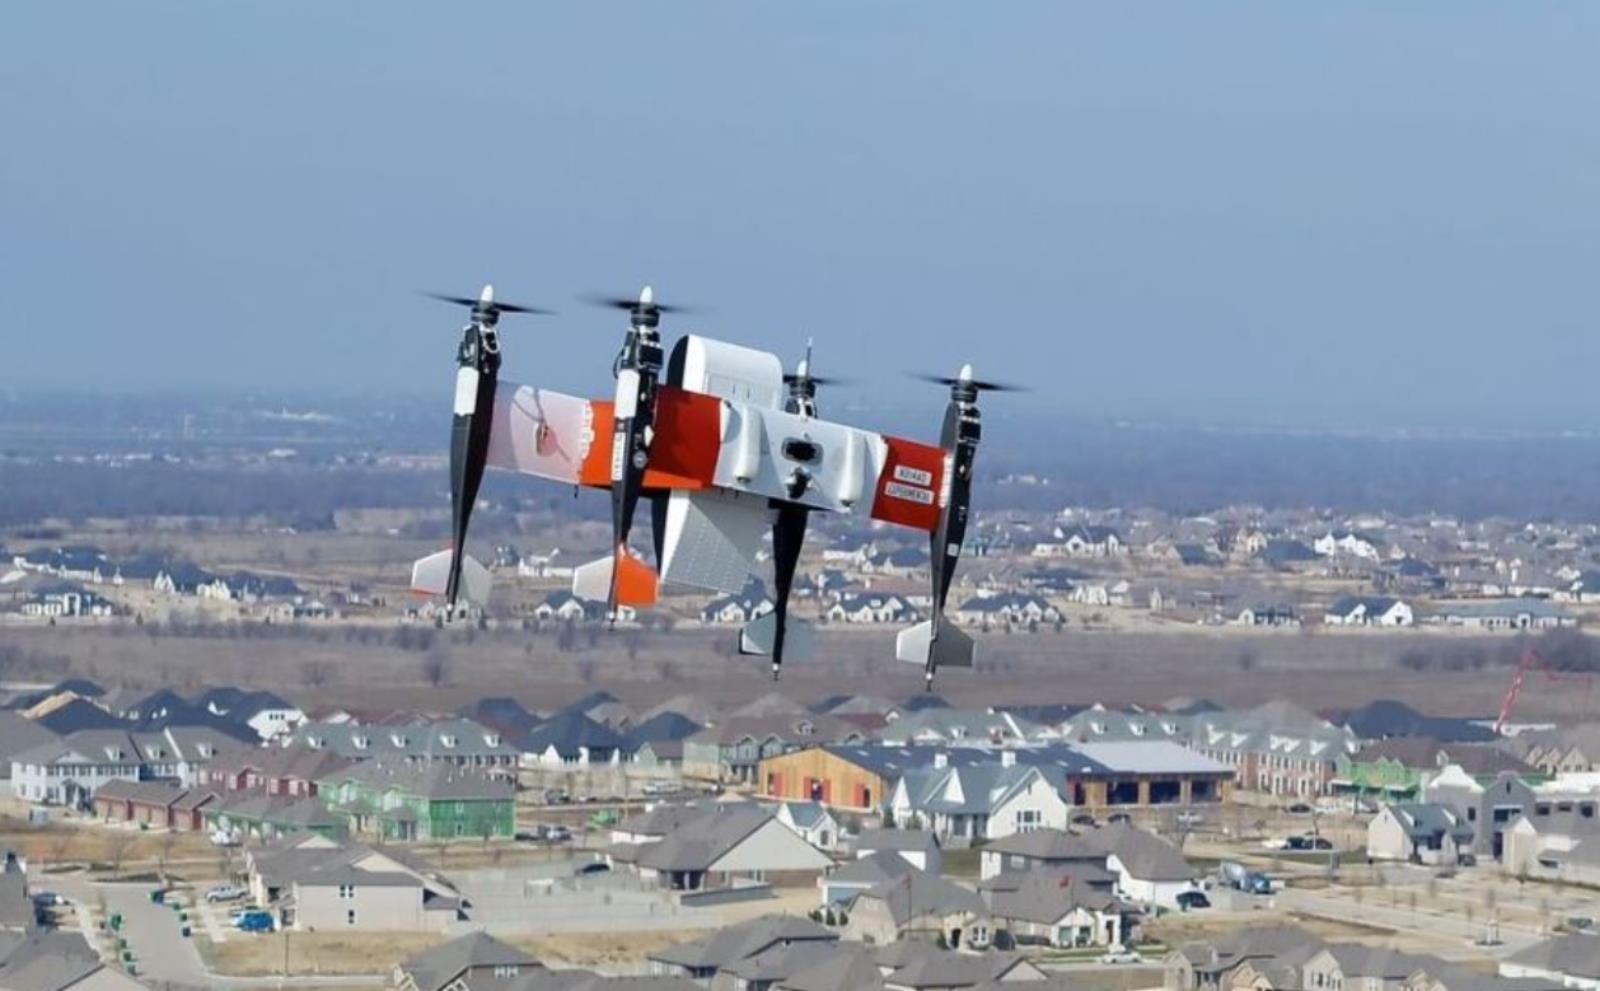 Wojskowe zrzuty wyposażenia w rękach dronów, Bell pokazał autonomicznego APT, Bell APT, dron APT